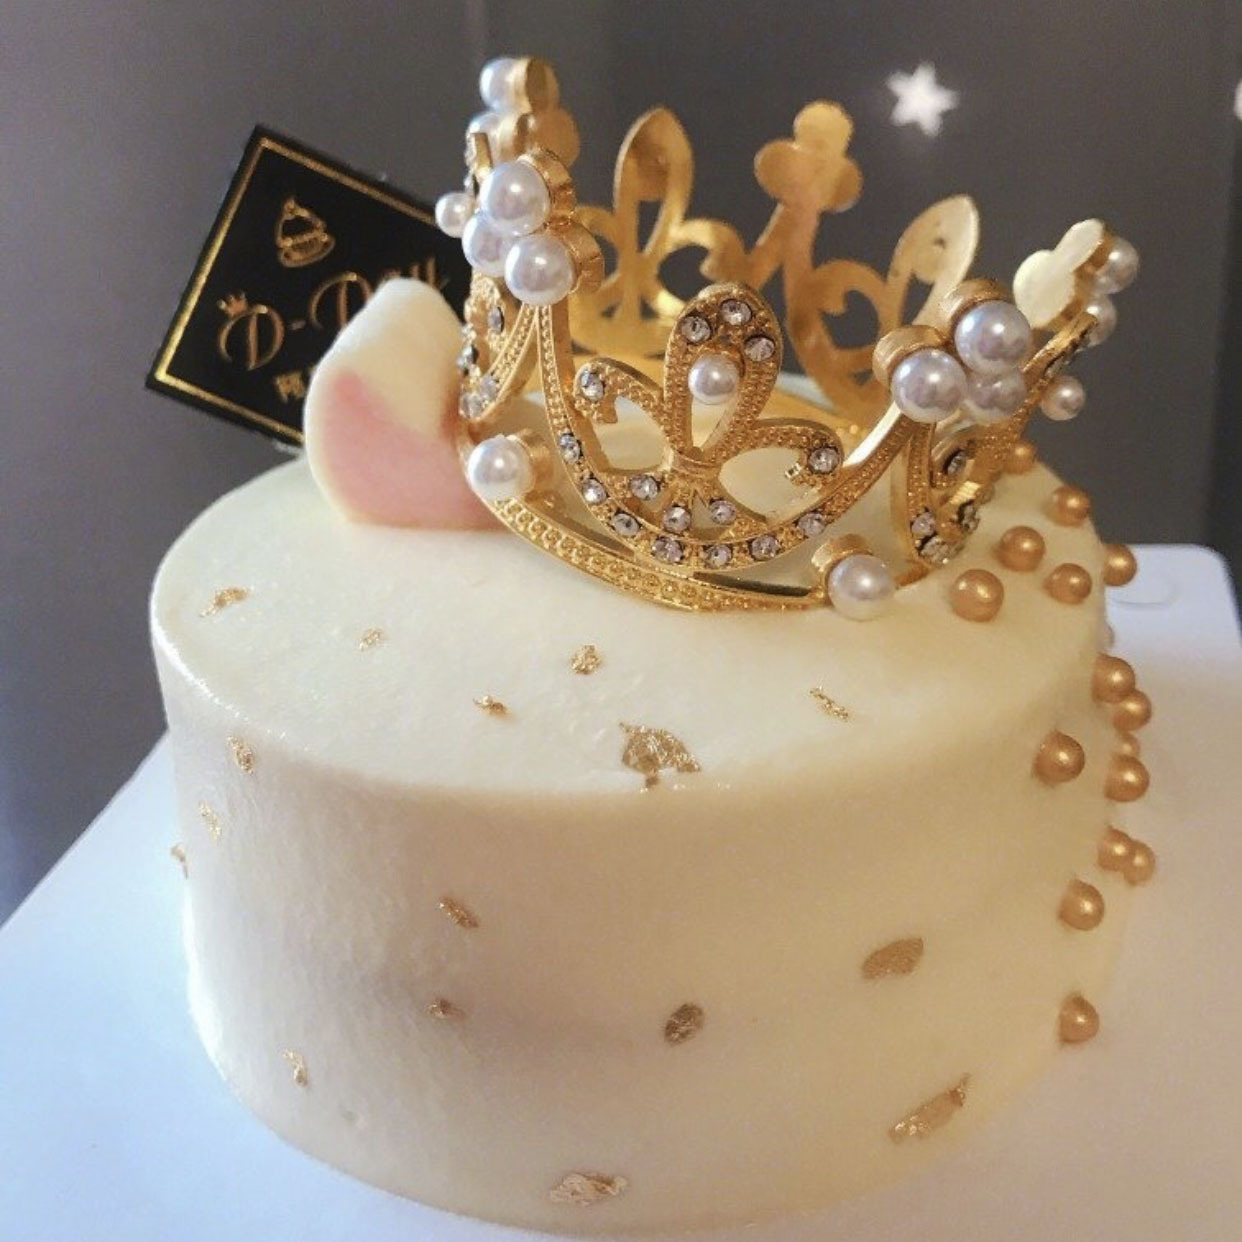 王冠蛋糕 迪士尼图片